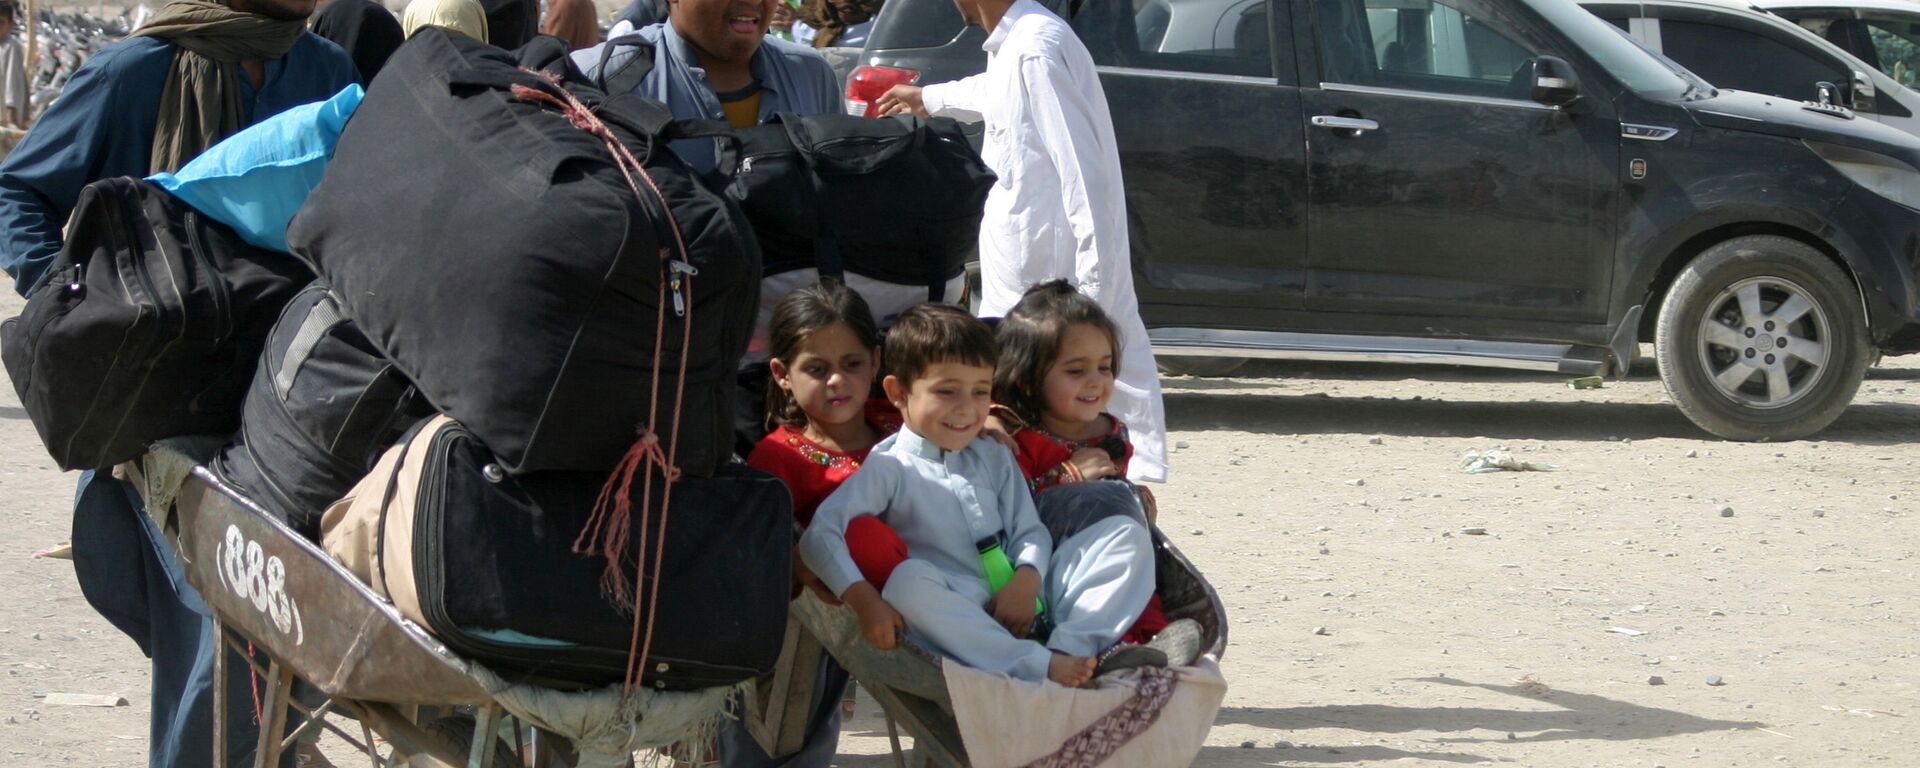 Семья из Афганистана с вещами на контрольно-пропускном пункте Ворота дружбы в пакистано-афганском пограничном городе Чаман, Пакистан - Sputnik Узбекистан, 1920, 20.09.2021